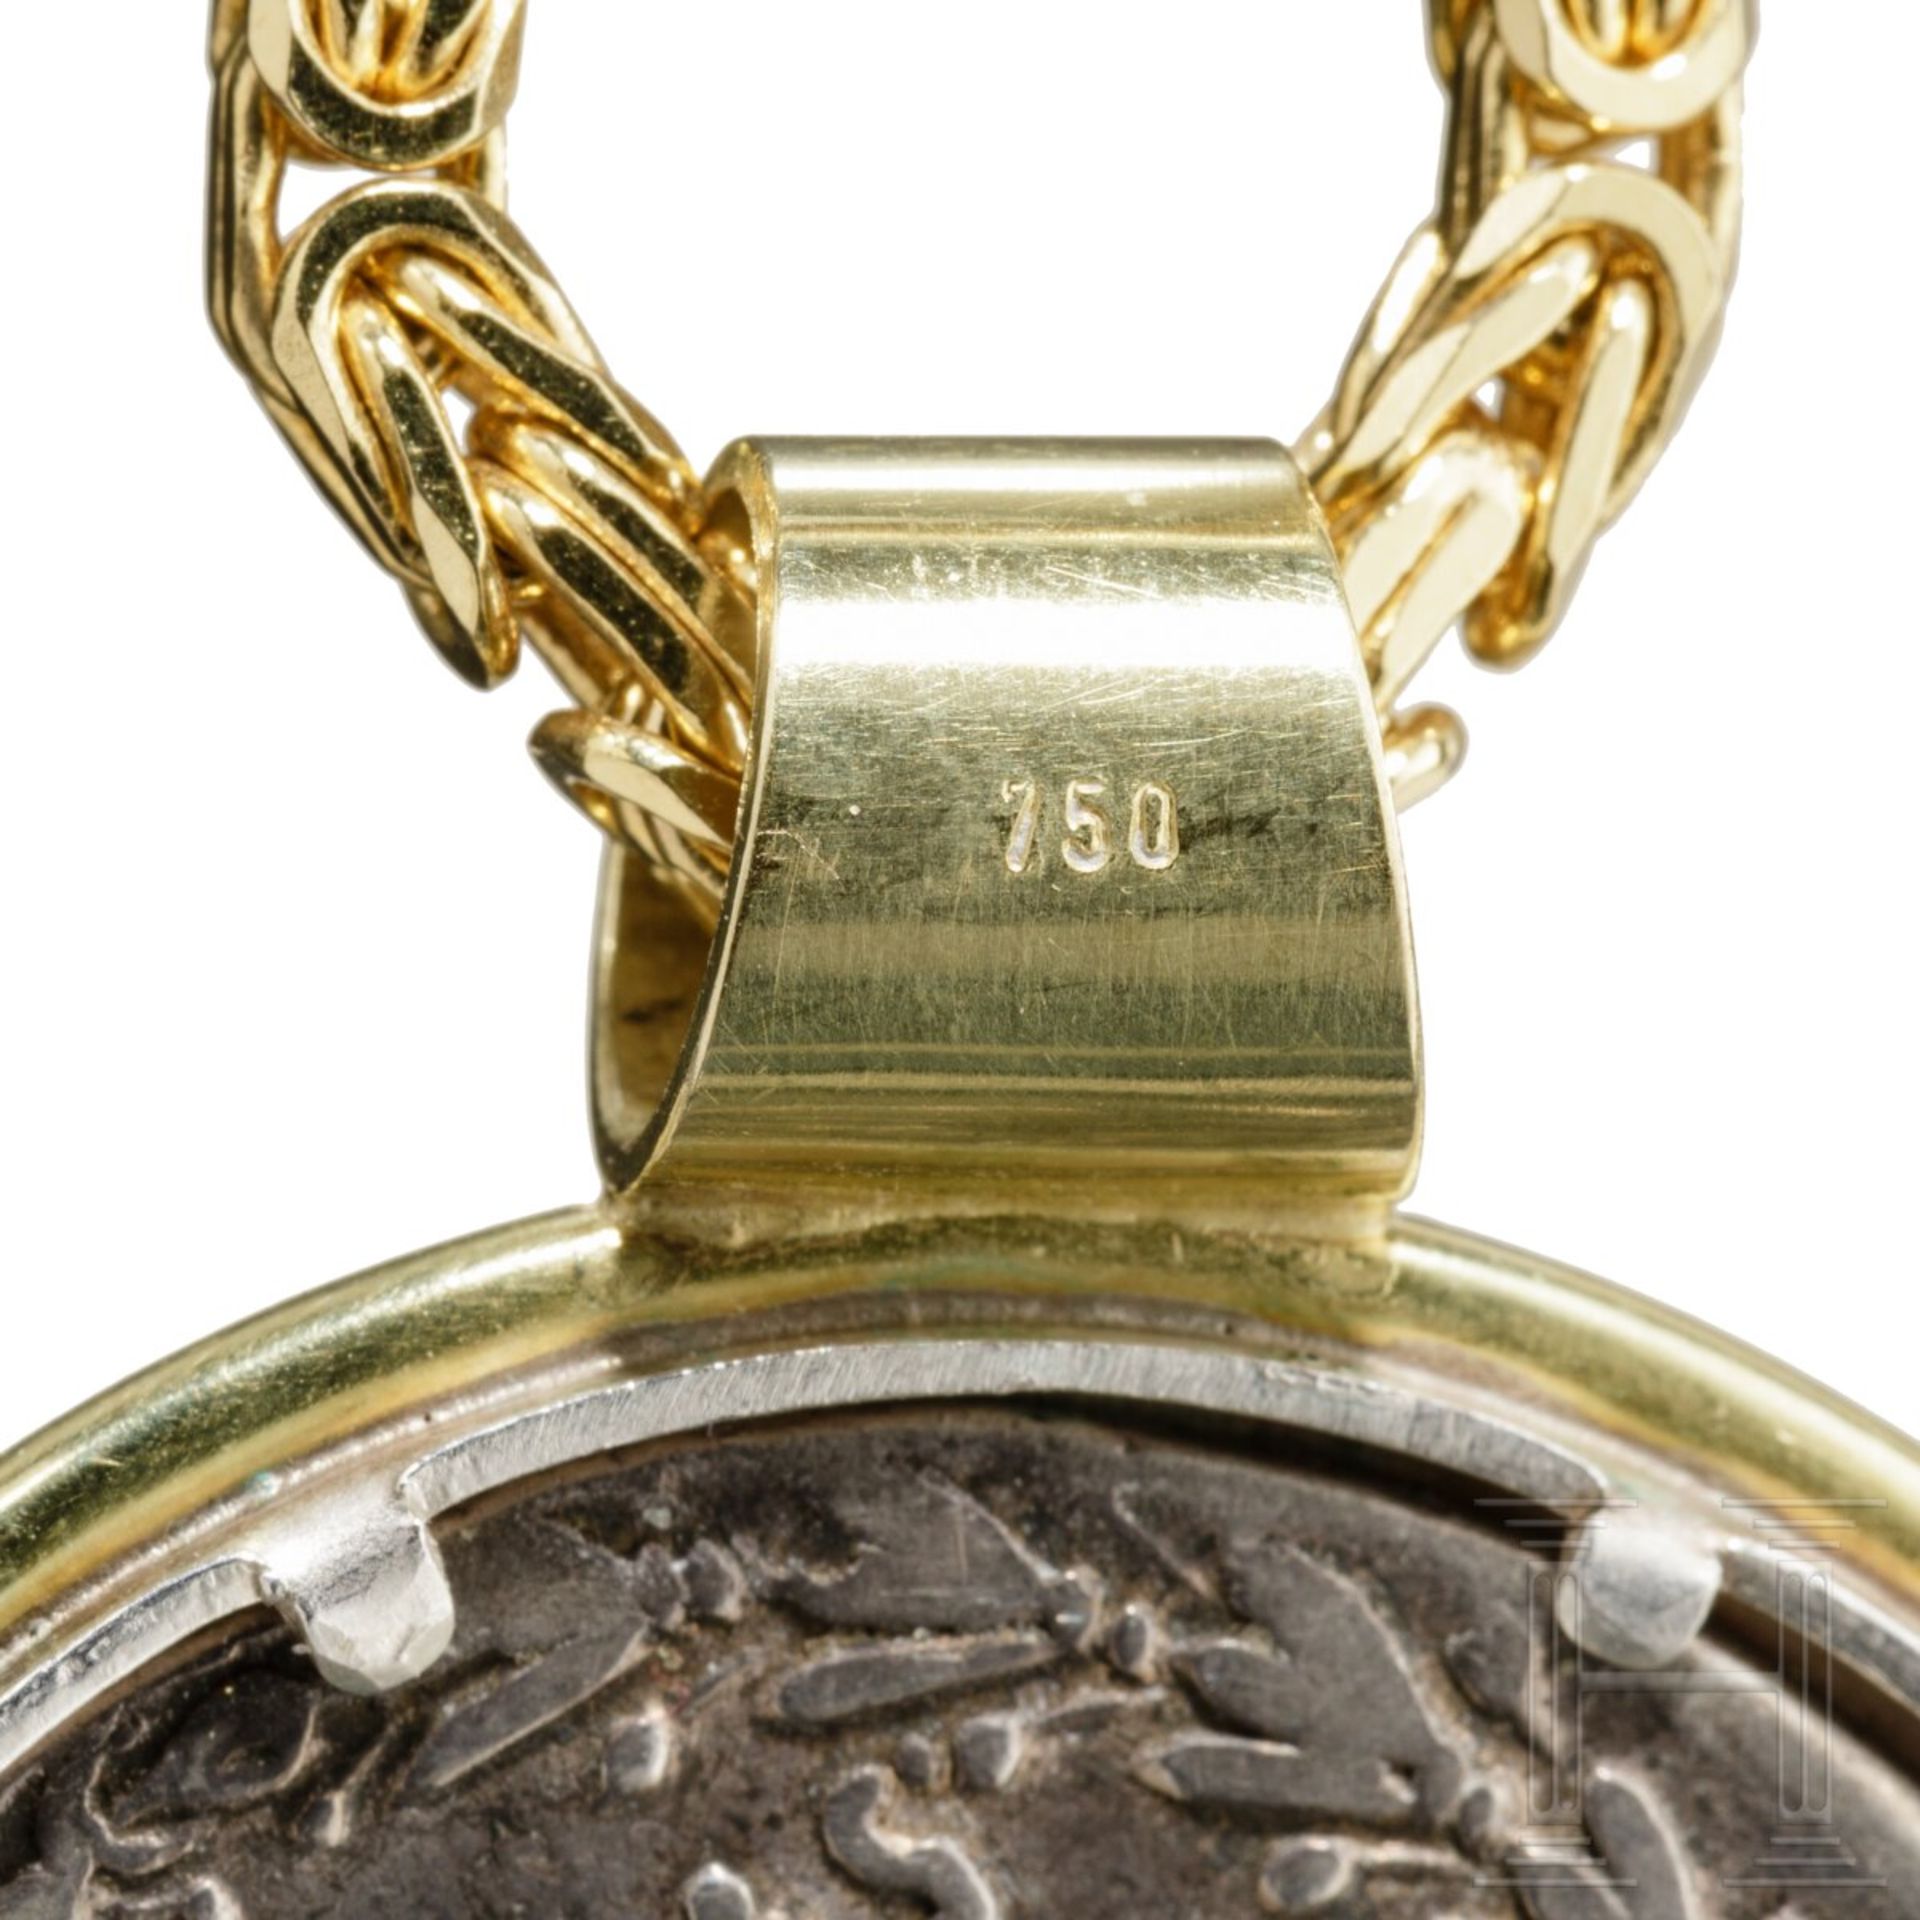 Goldkette mit Goldanhänger mit griechischer Silbermünze (Tetradrachme)  - Bild 3 aus 6